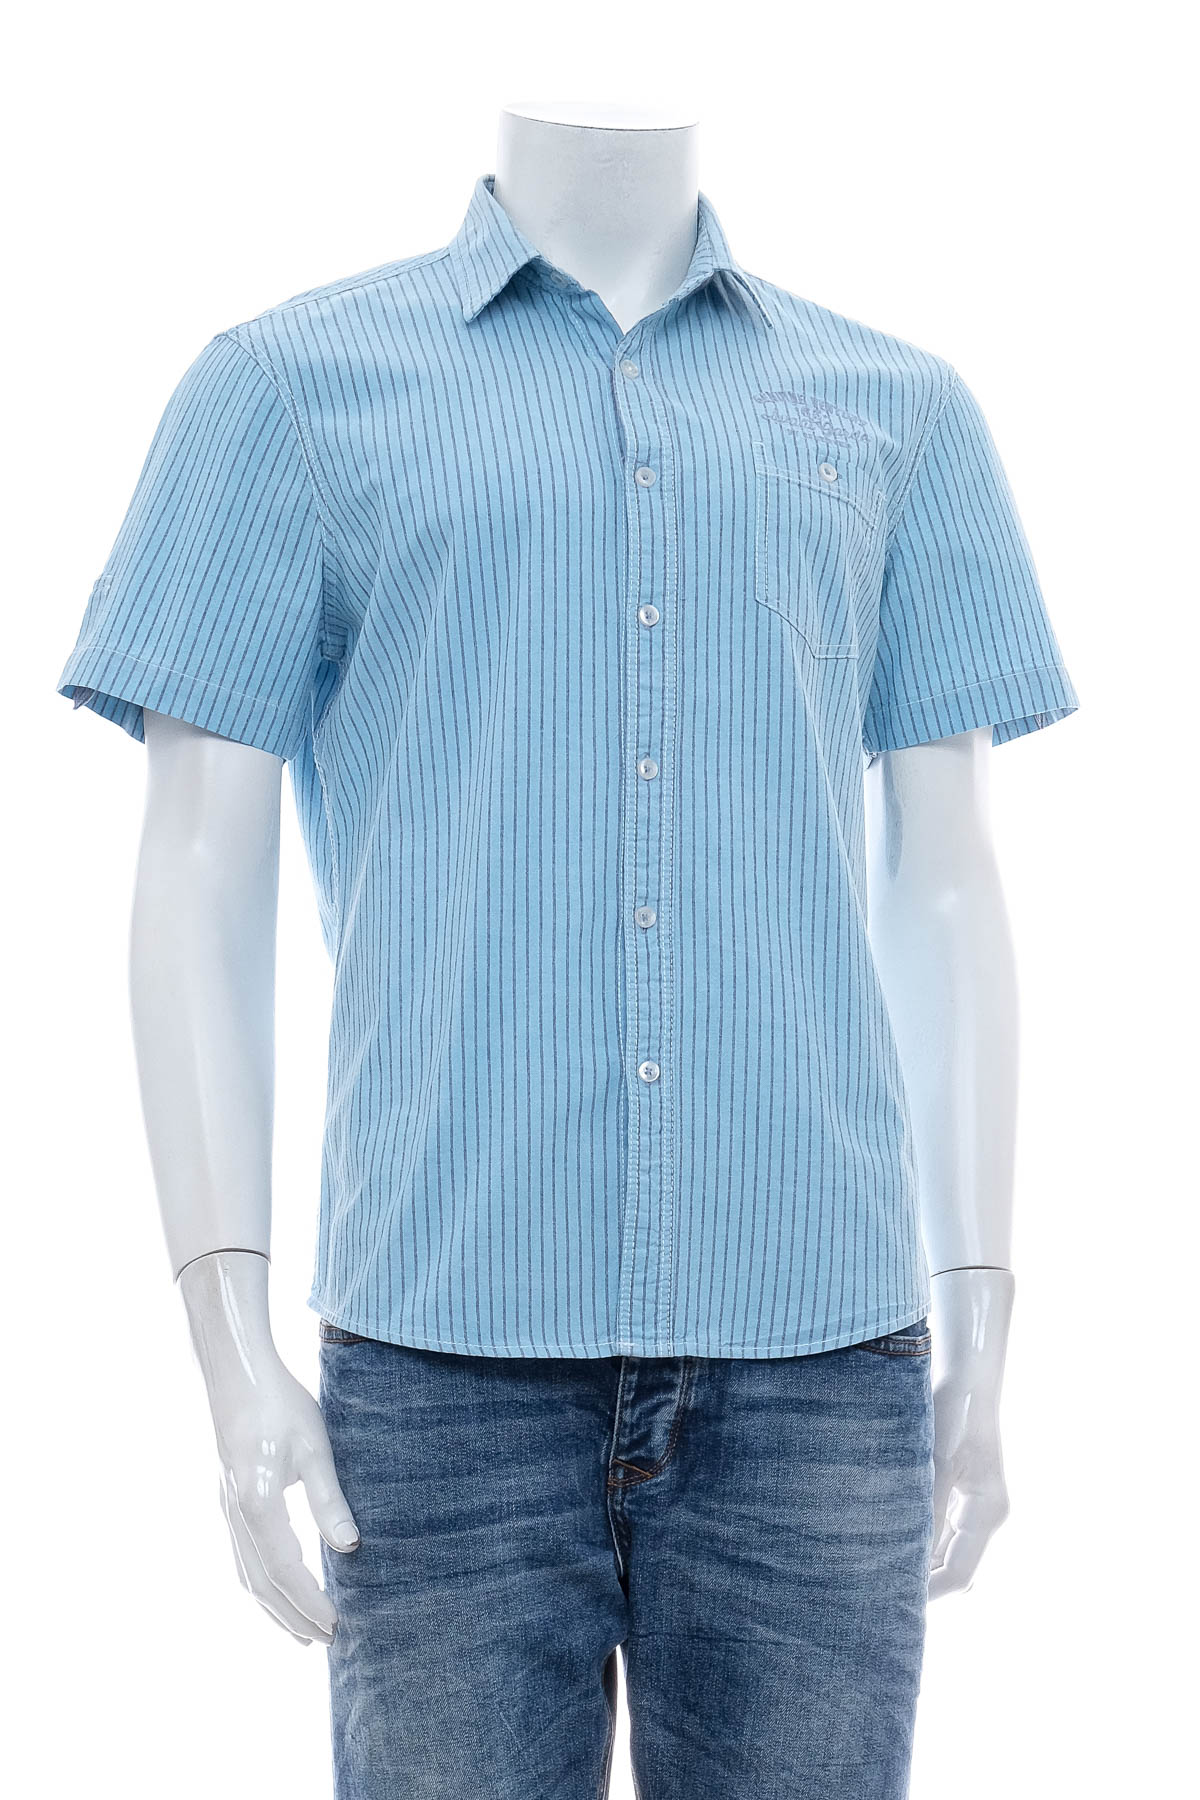 Ανδρικό πουκάμισο - RESERVED - 0